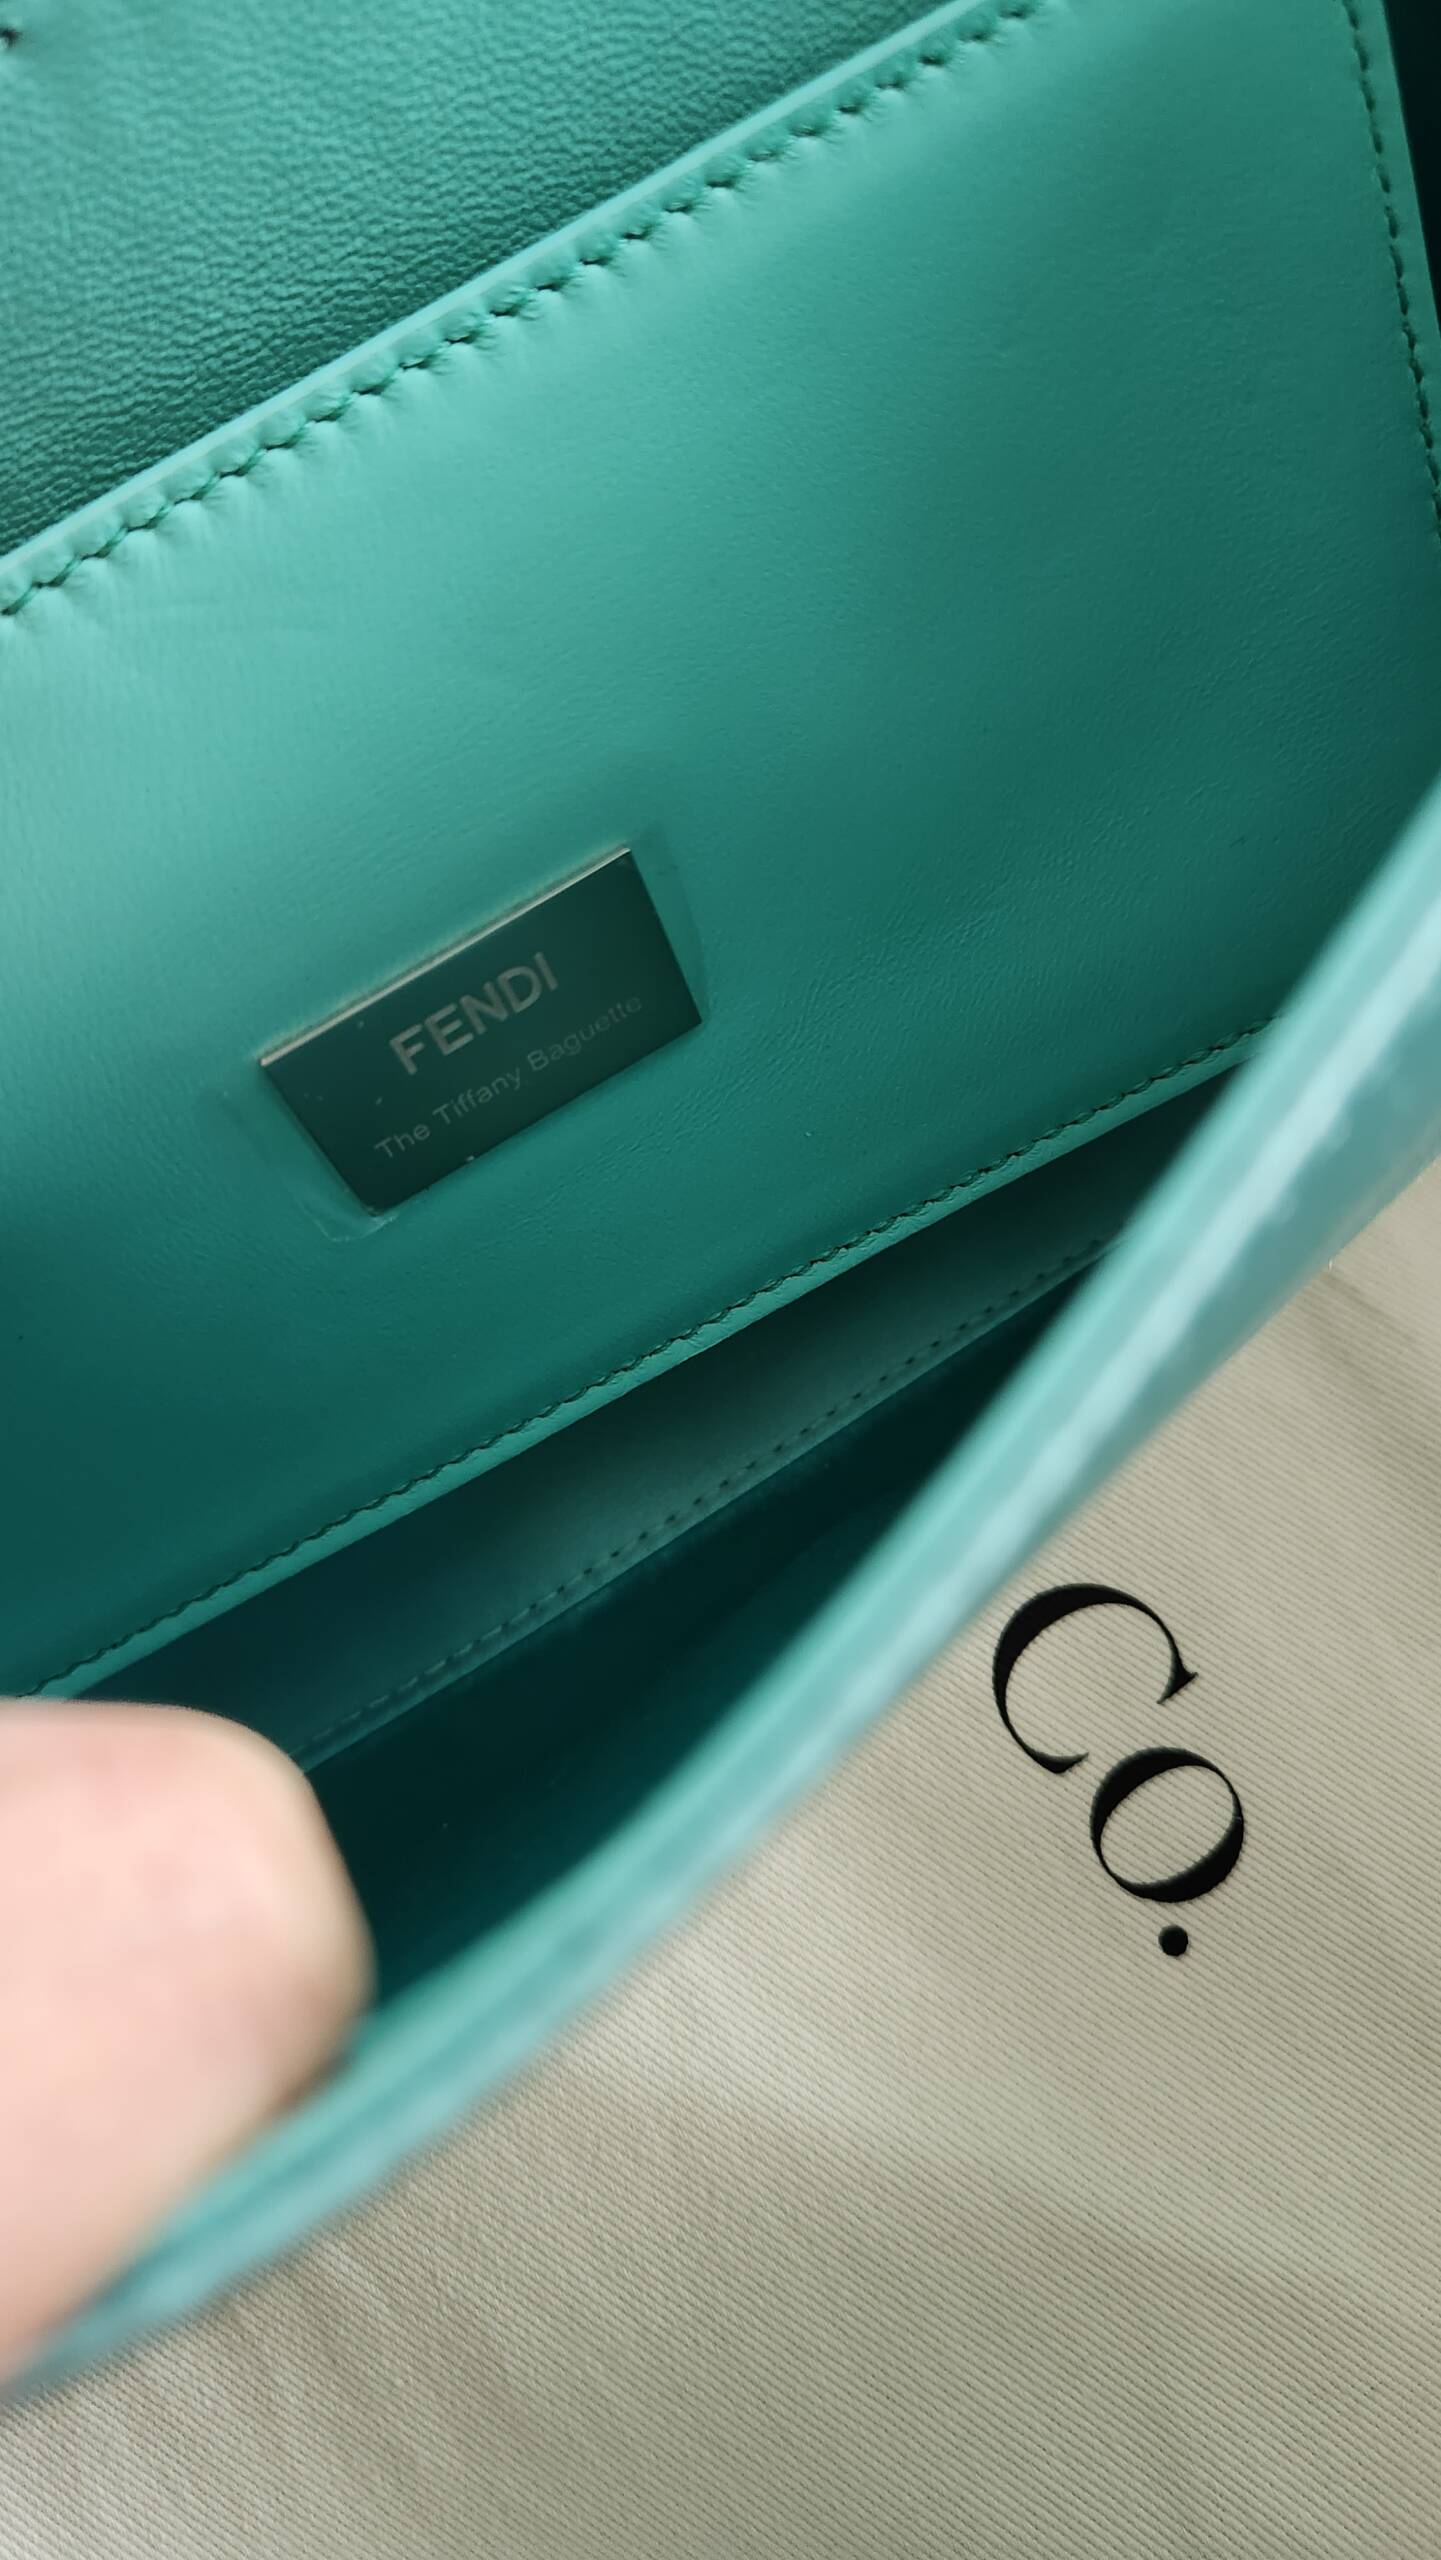 Tiffany T Nano Bag in Tiffany Blue Leather